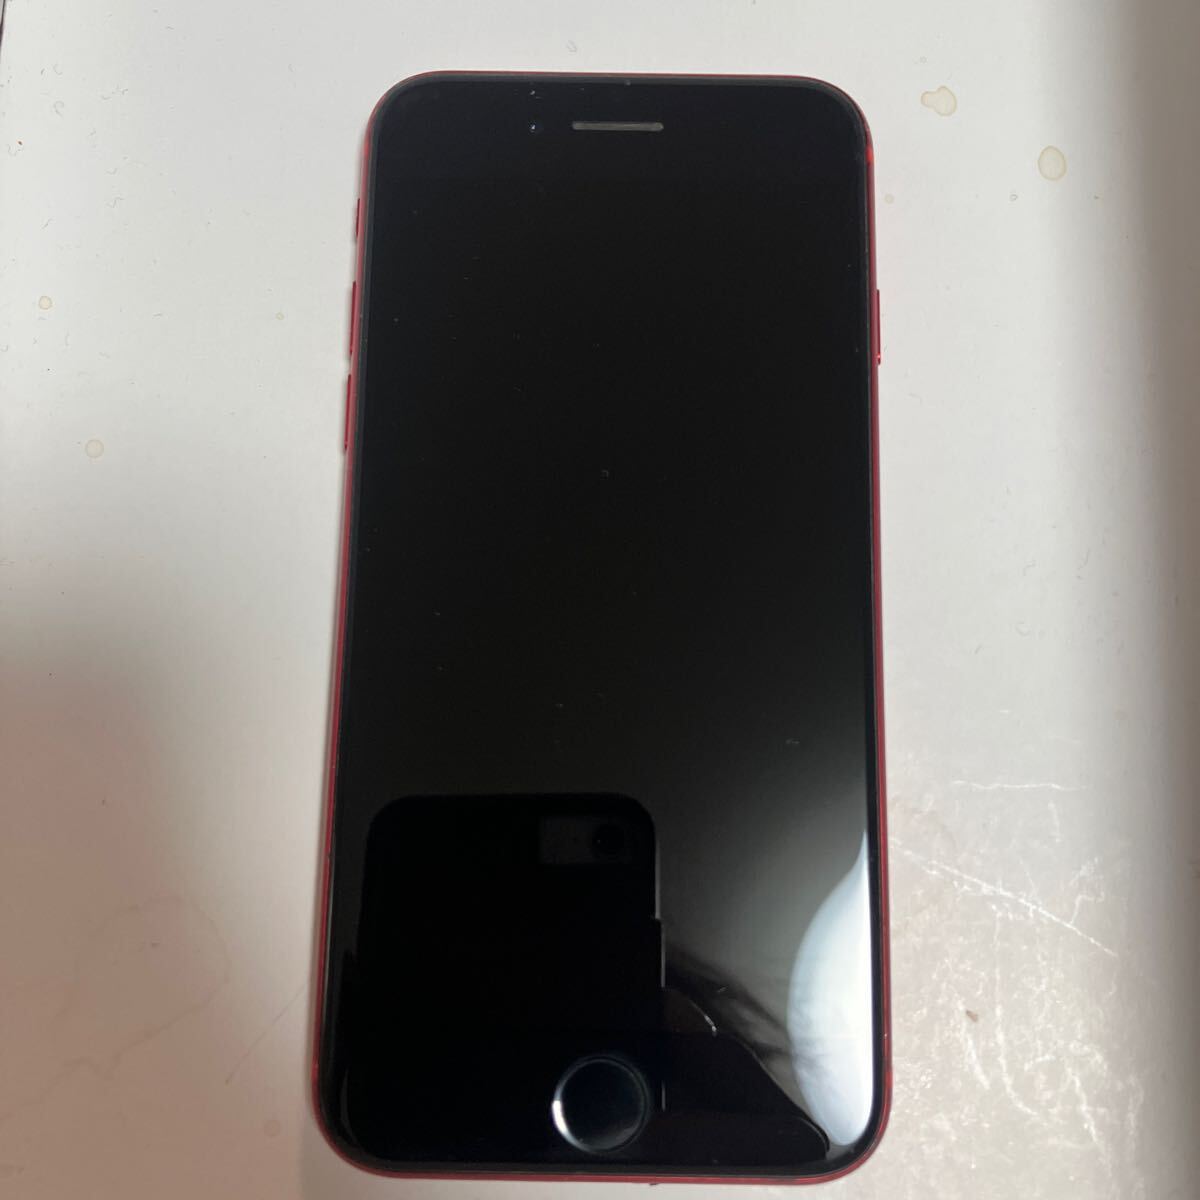 Apple iPhone SE2 SIMフリー product RED 128GB バッテリー容量100%表示エラー無の画像7